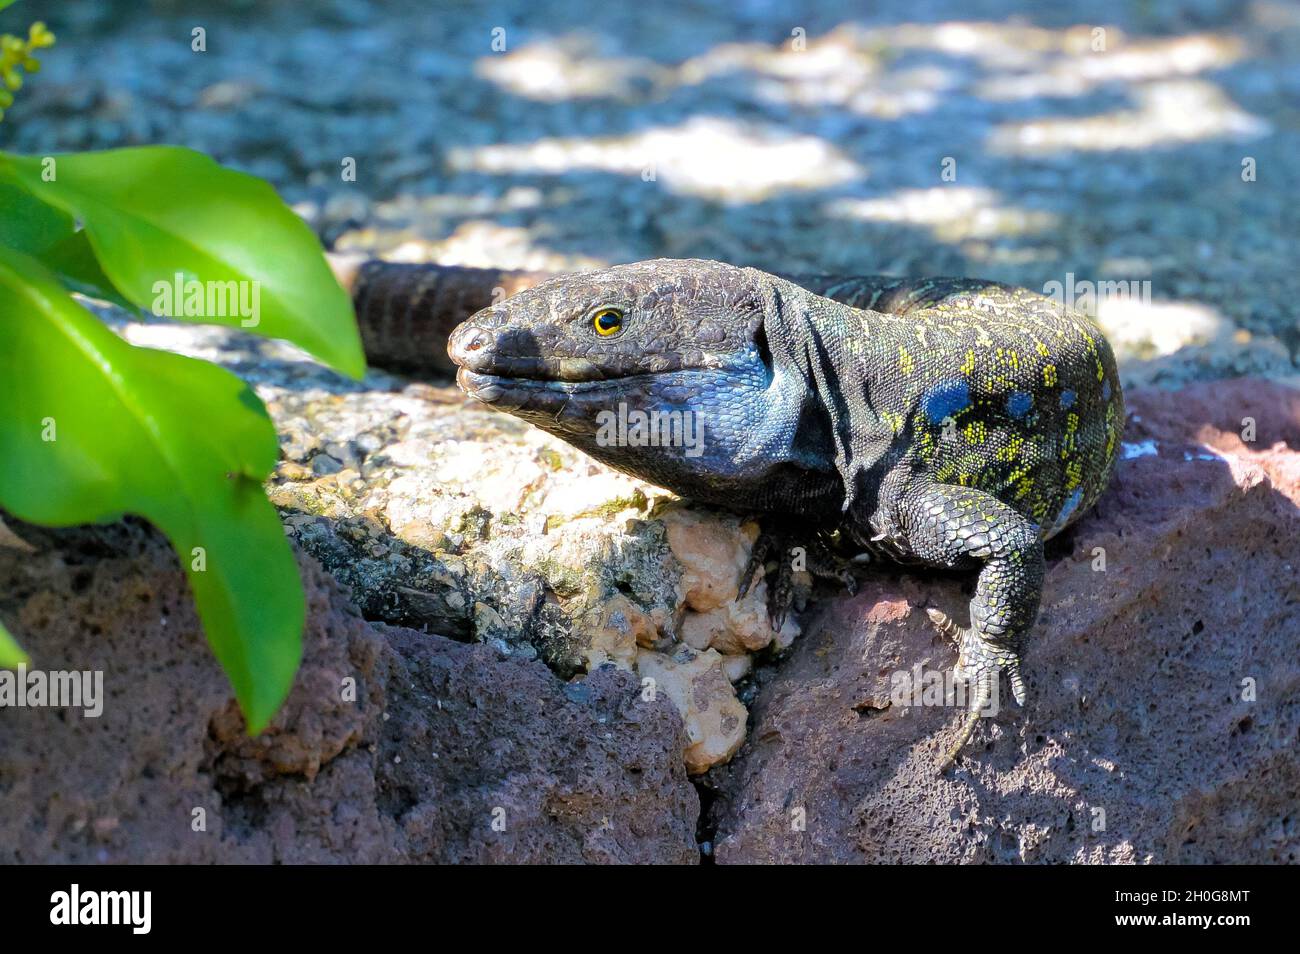 Die Lizard der Teneriffa- oder Westkanaren (Gallotia galloti) sonnt sich an grünen Blättern auf Lavagesteinen und blickt auf die Kamera Stockfoto